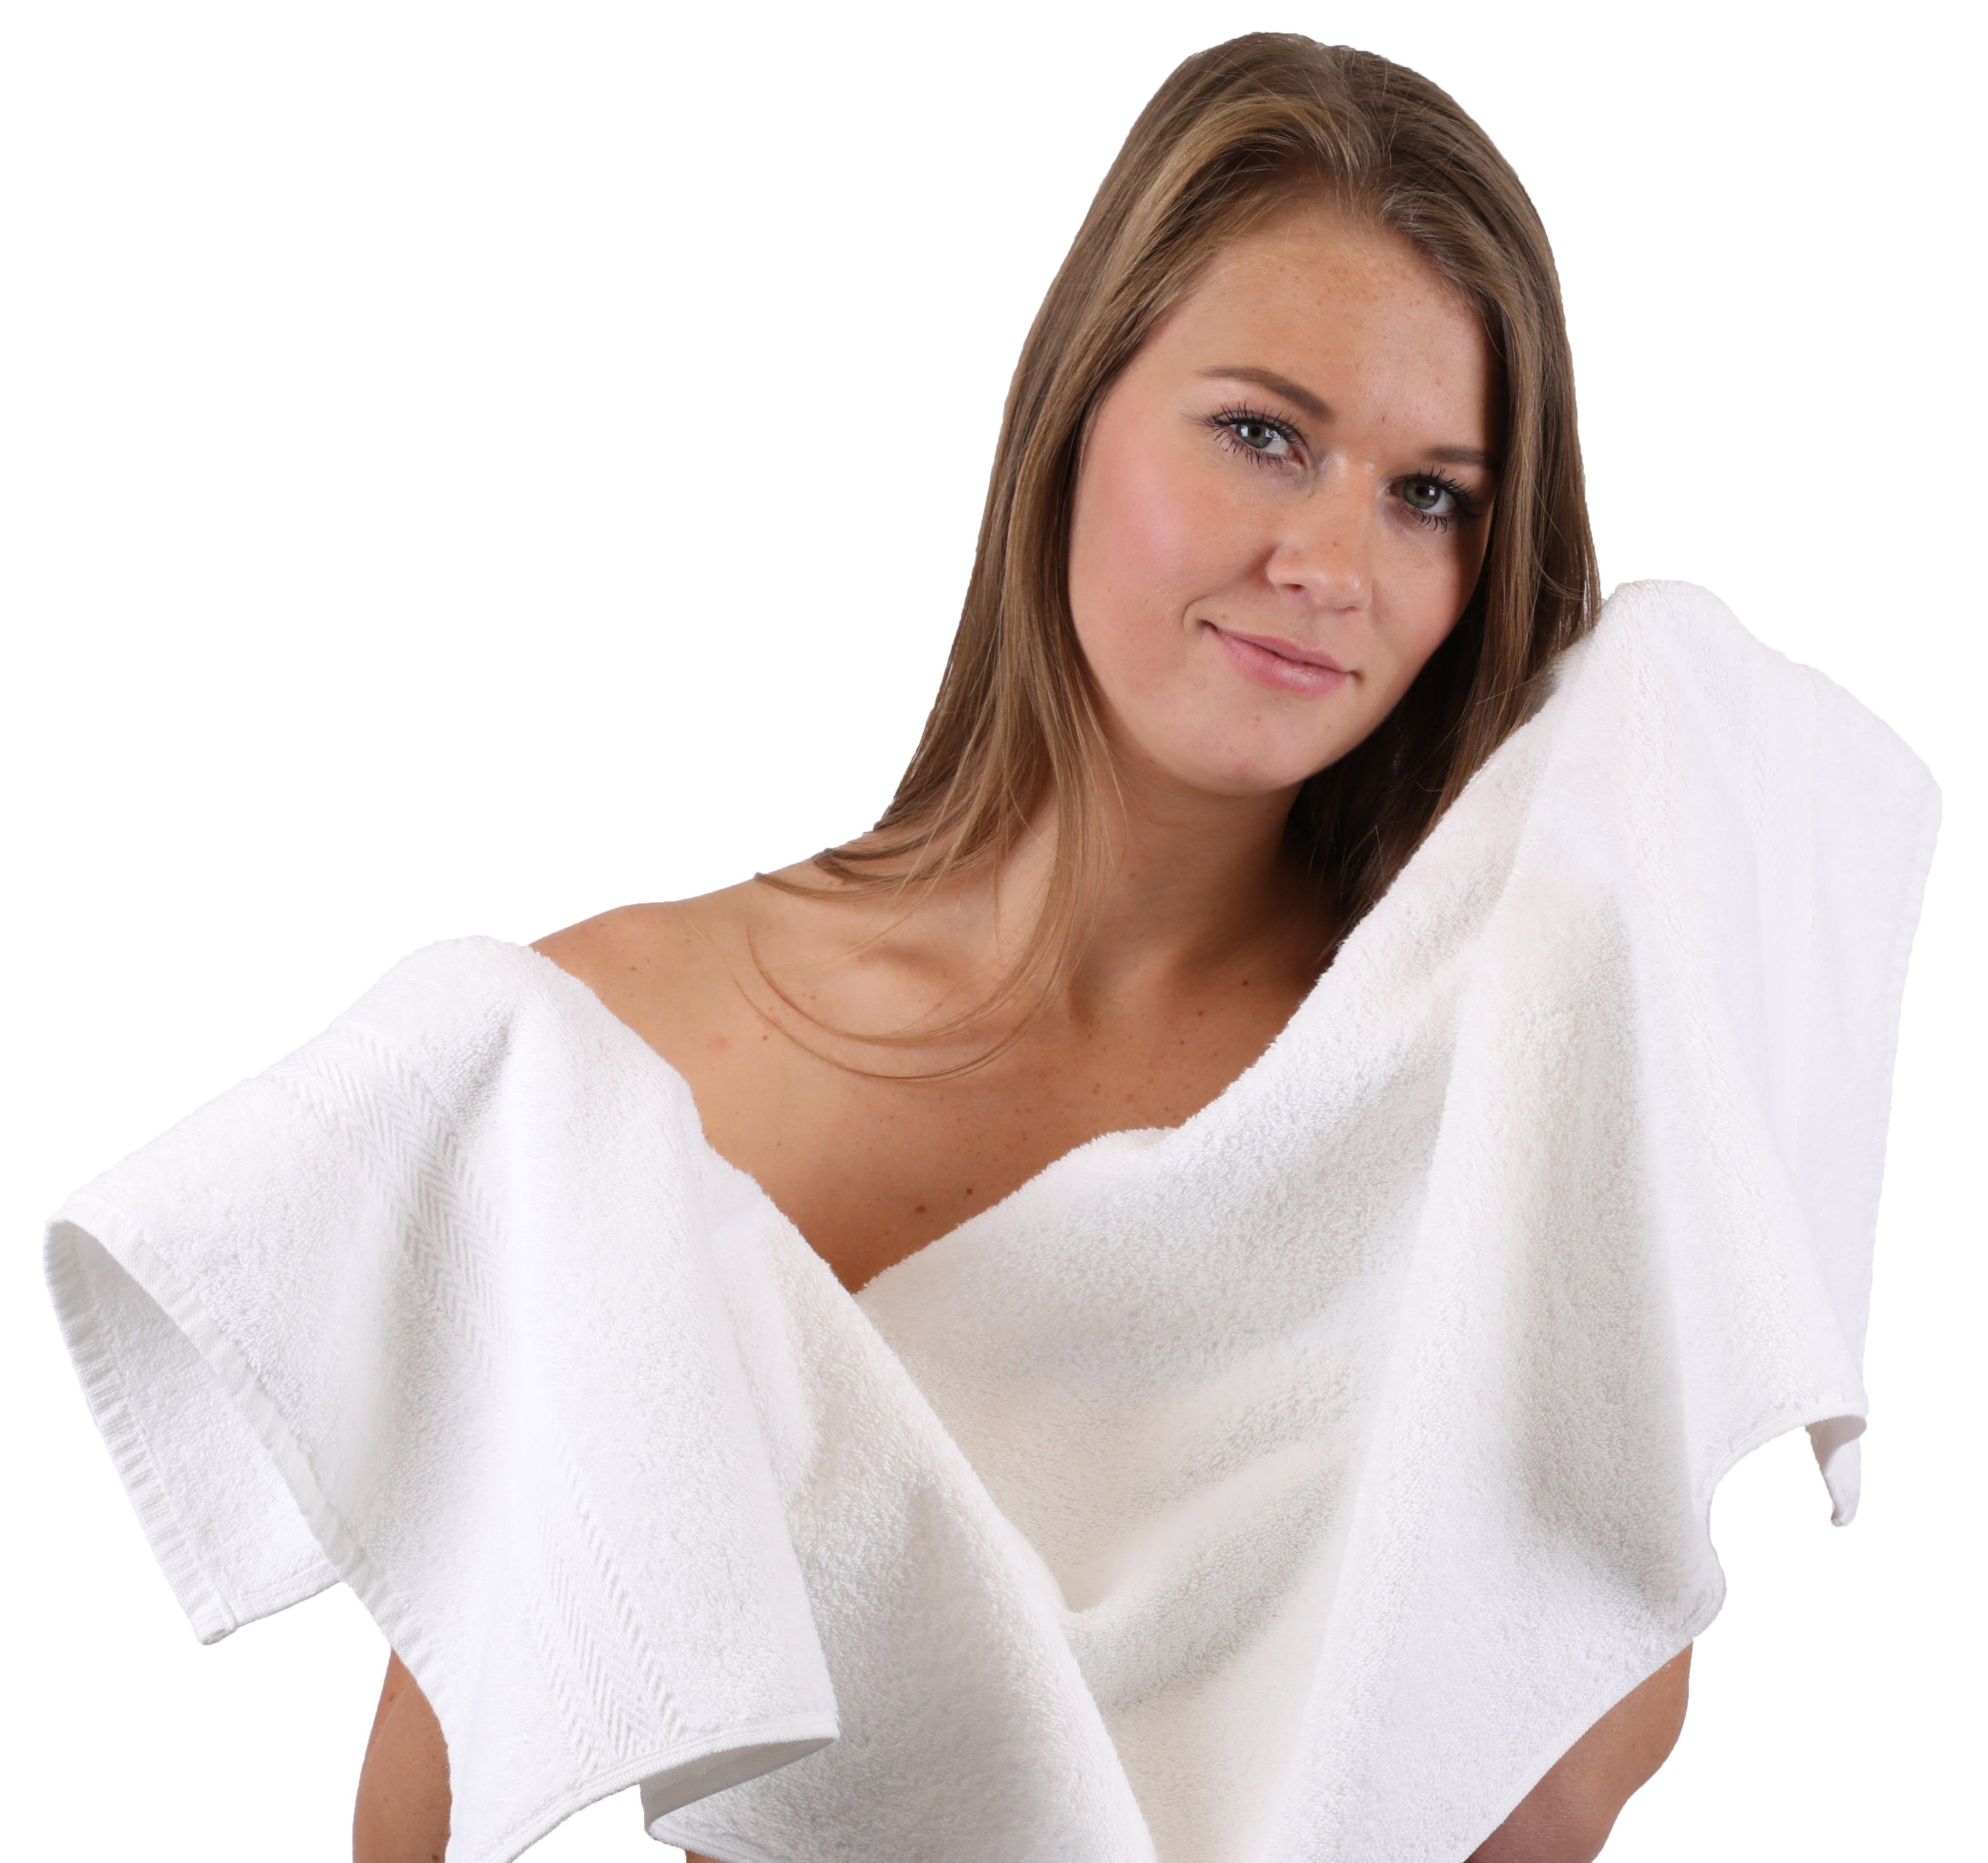 Betz Handtuch Handtuch-Set Farbe 100% Weiß, Rot (10-tlg) 10-TLG. & Set Baumwolle, Premium